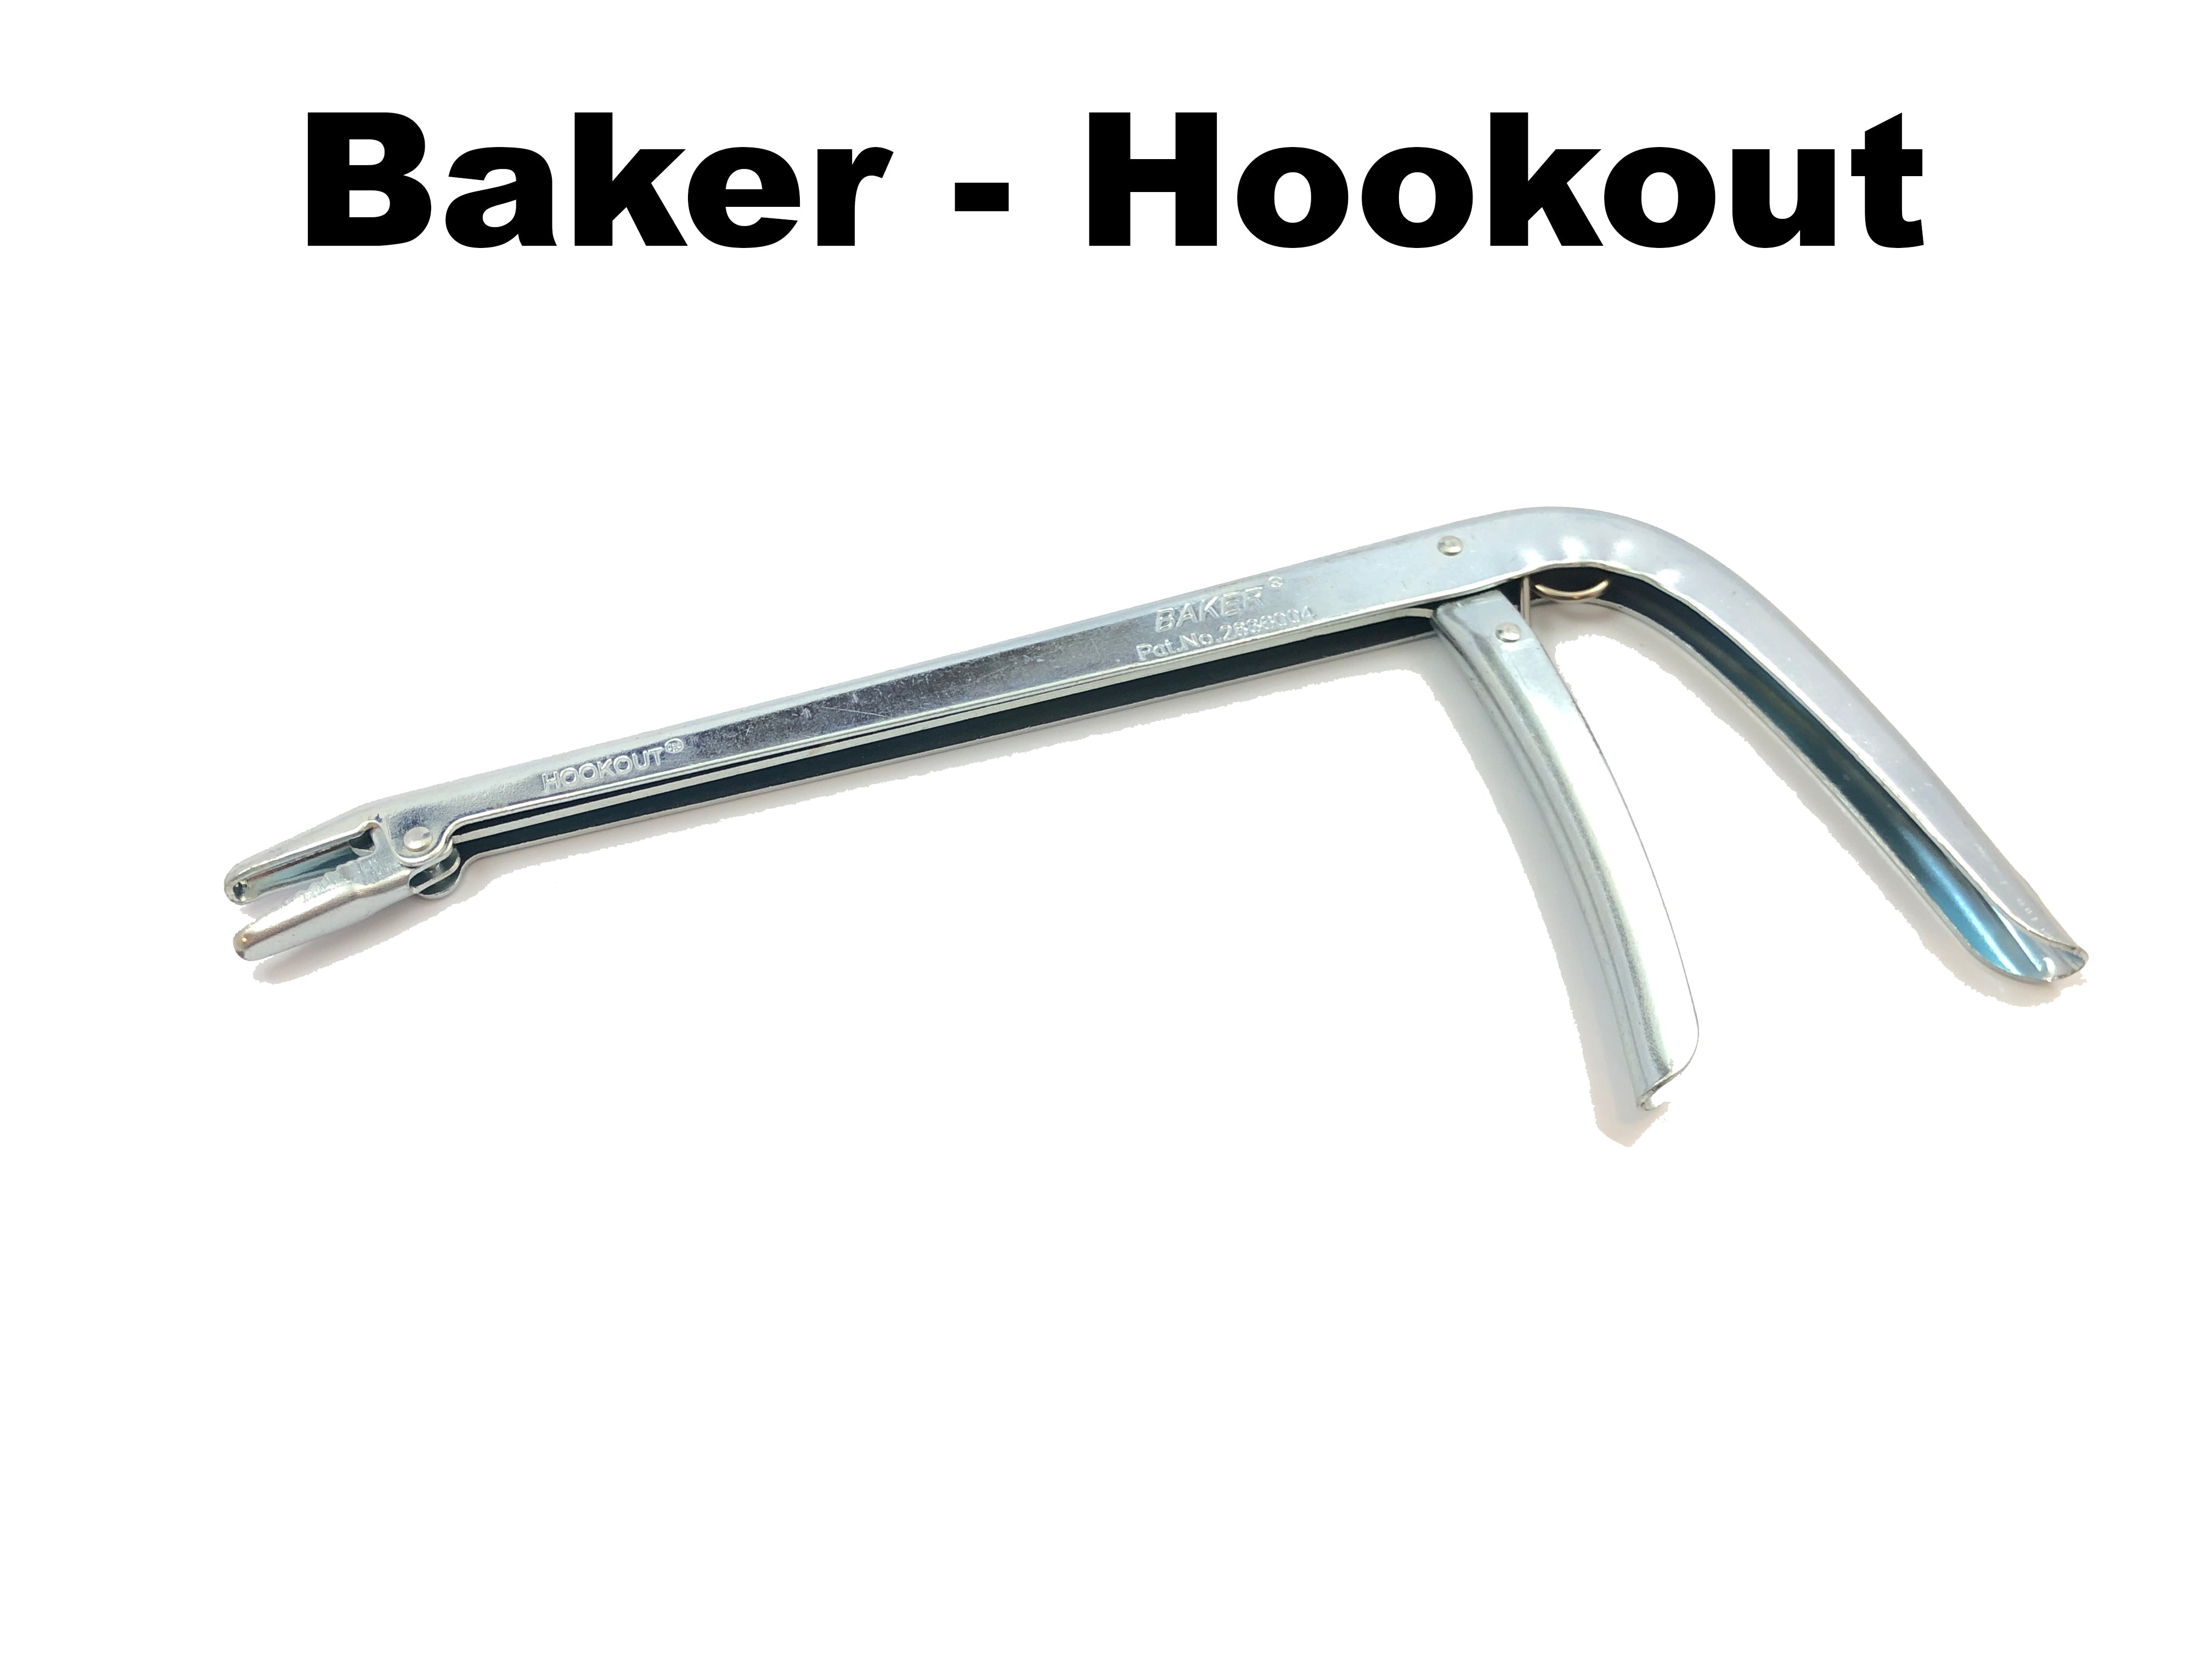 Baker Hookout – Team Rhino Outdoors LLC